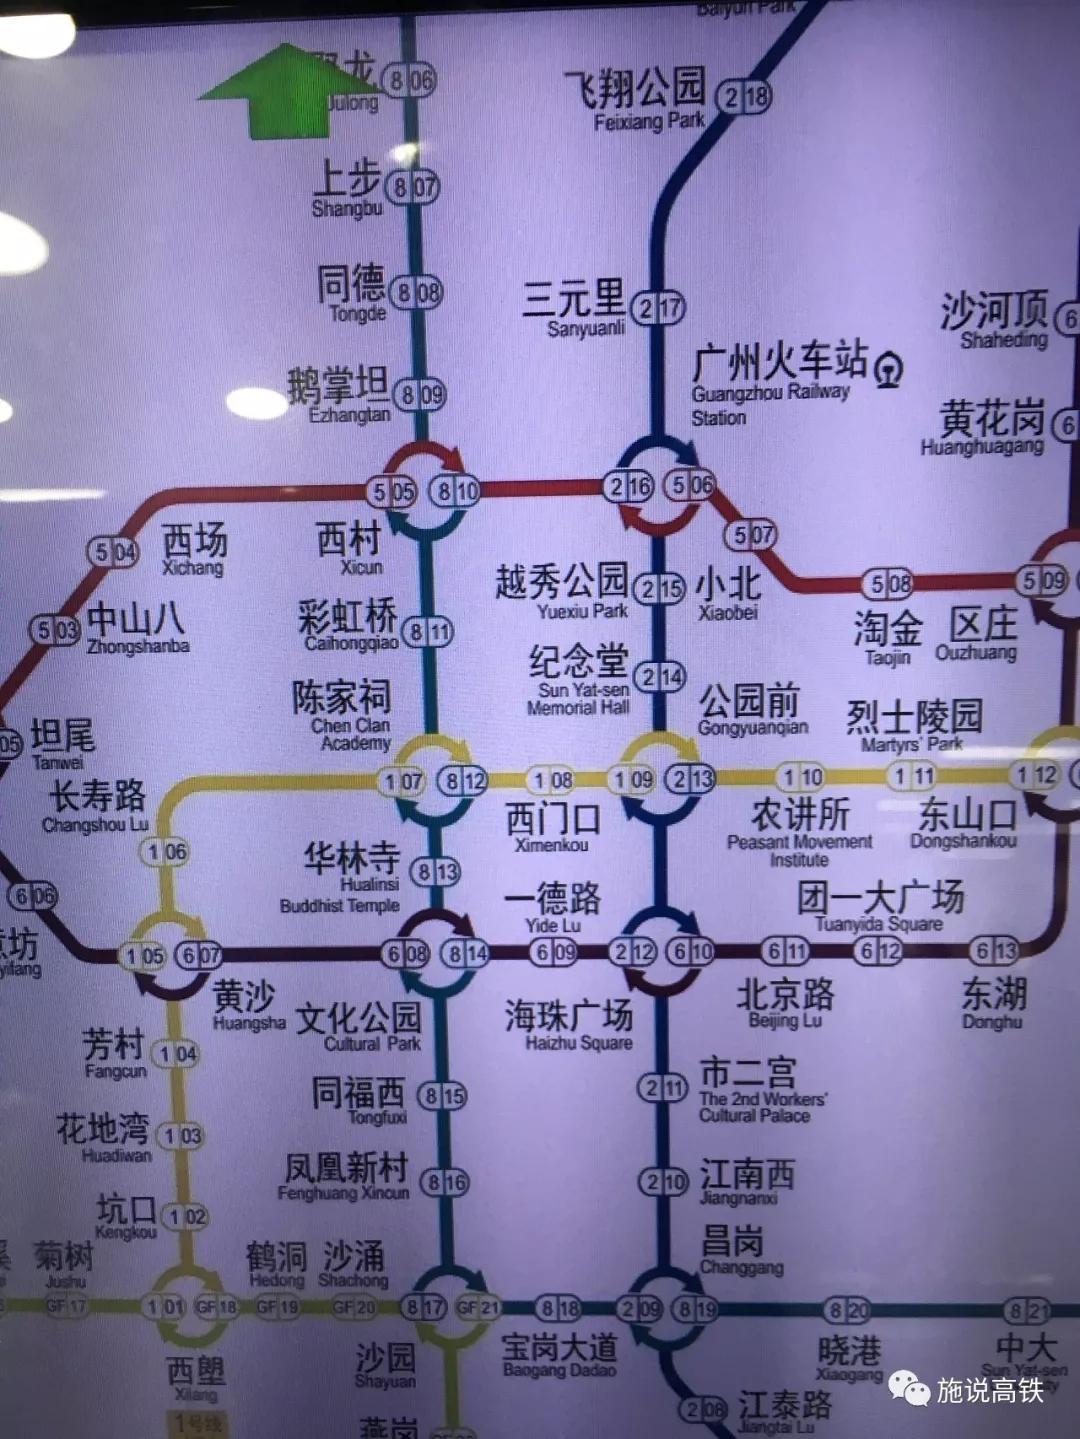 广州地铁自动售票机更新了地铁线路图两条地铁新线正式上线